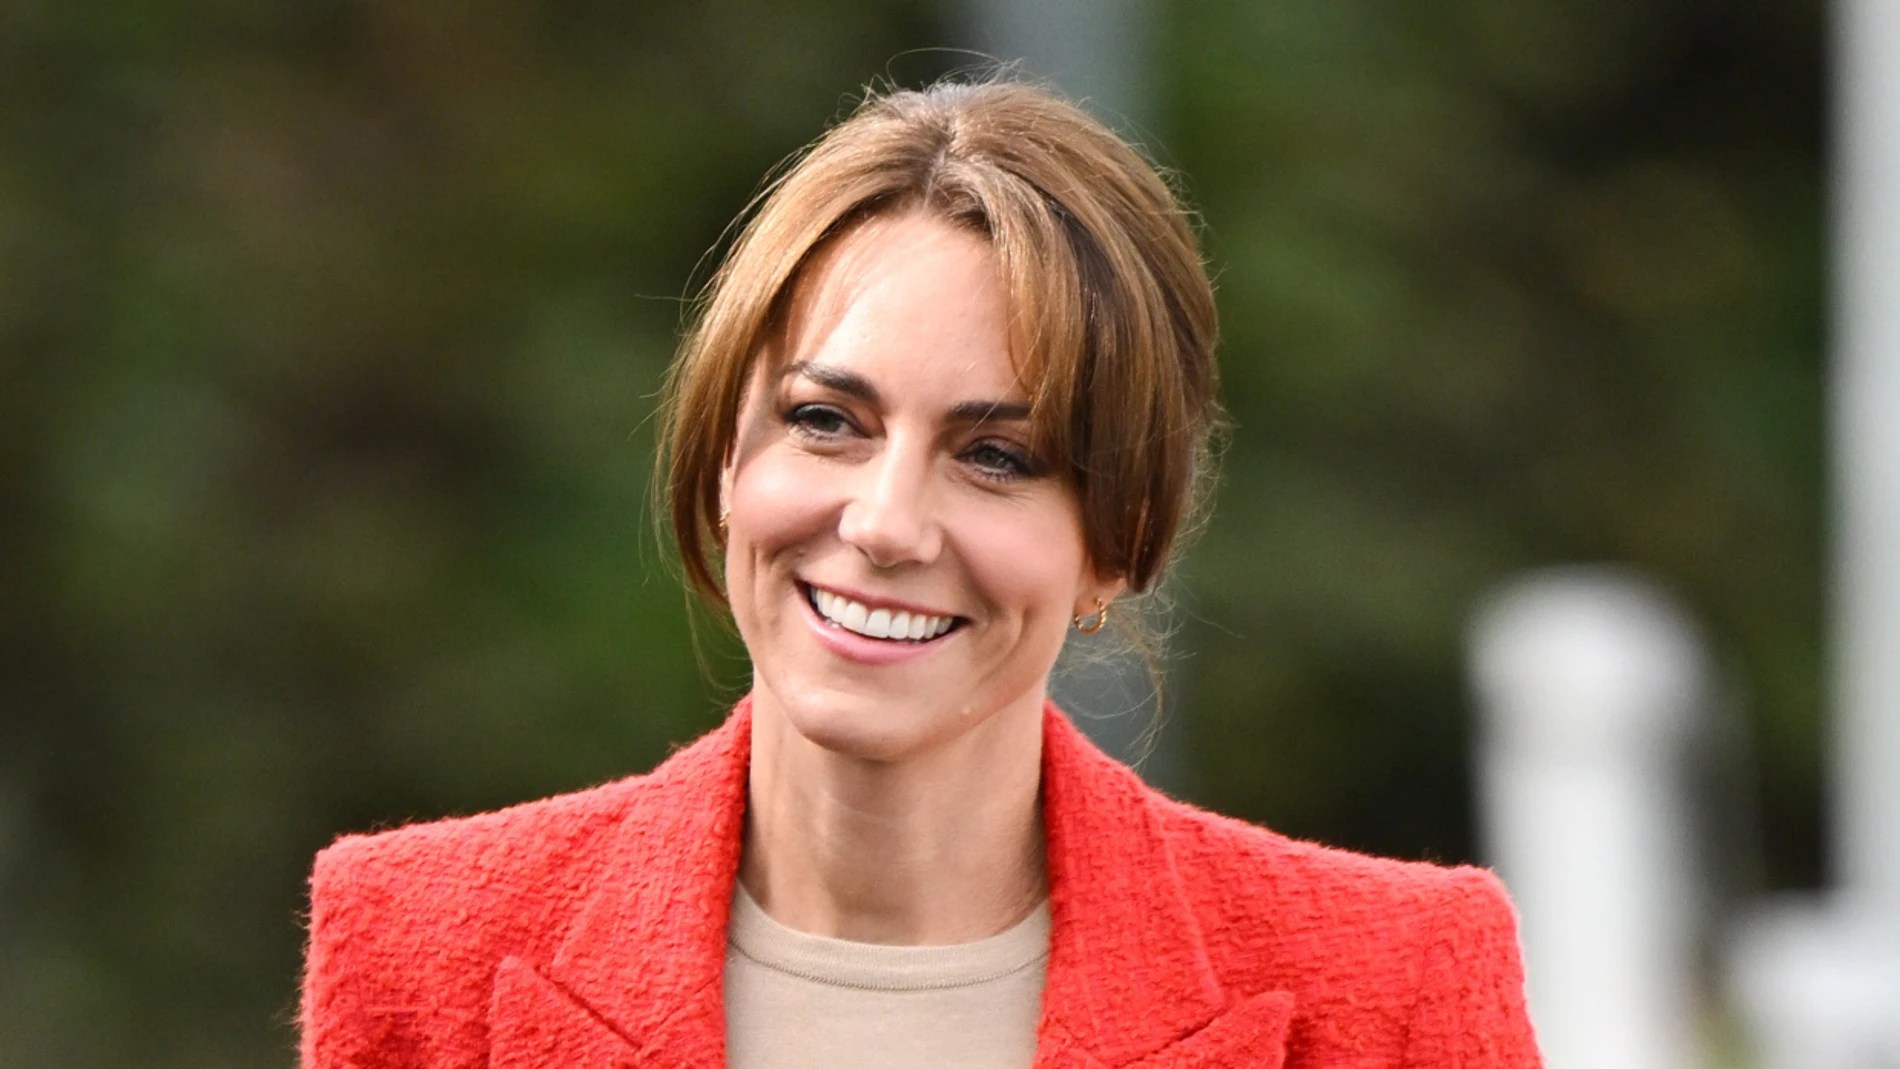 Kate Middleton está muy enferma y el tratamiento es agotador, según Lady Colin Campbell